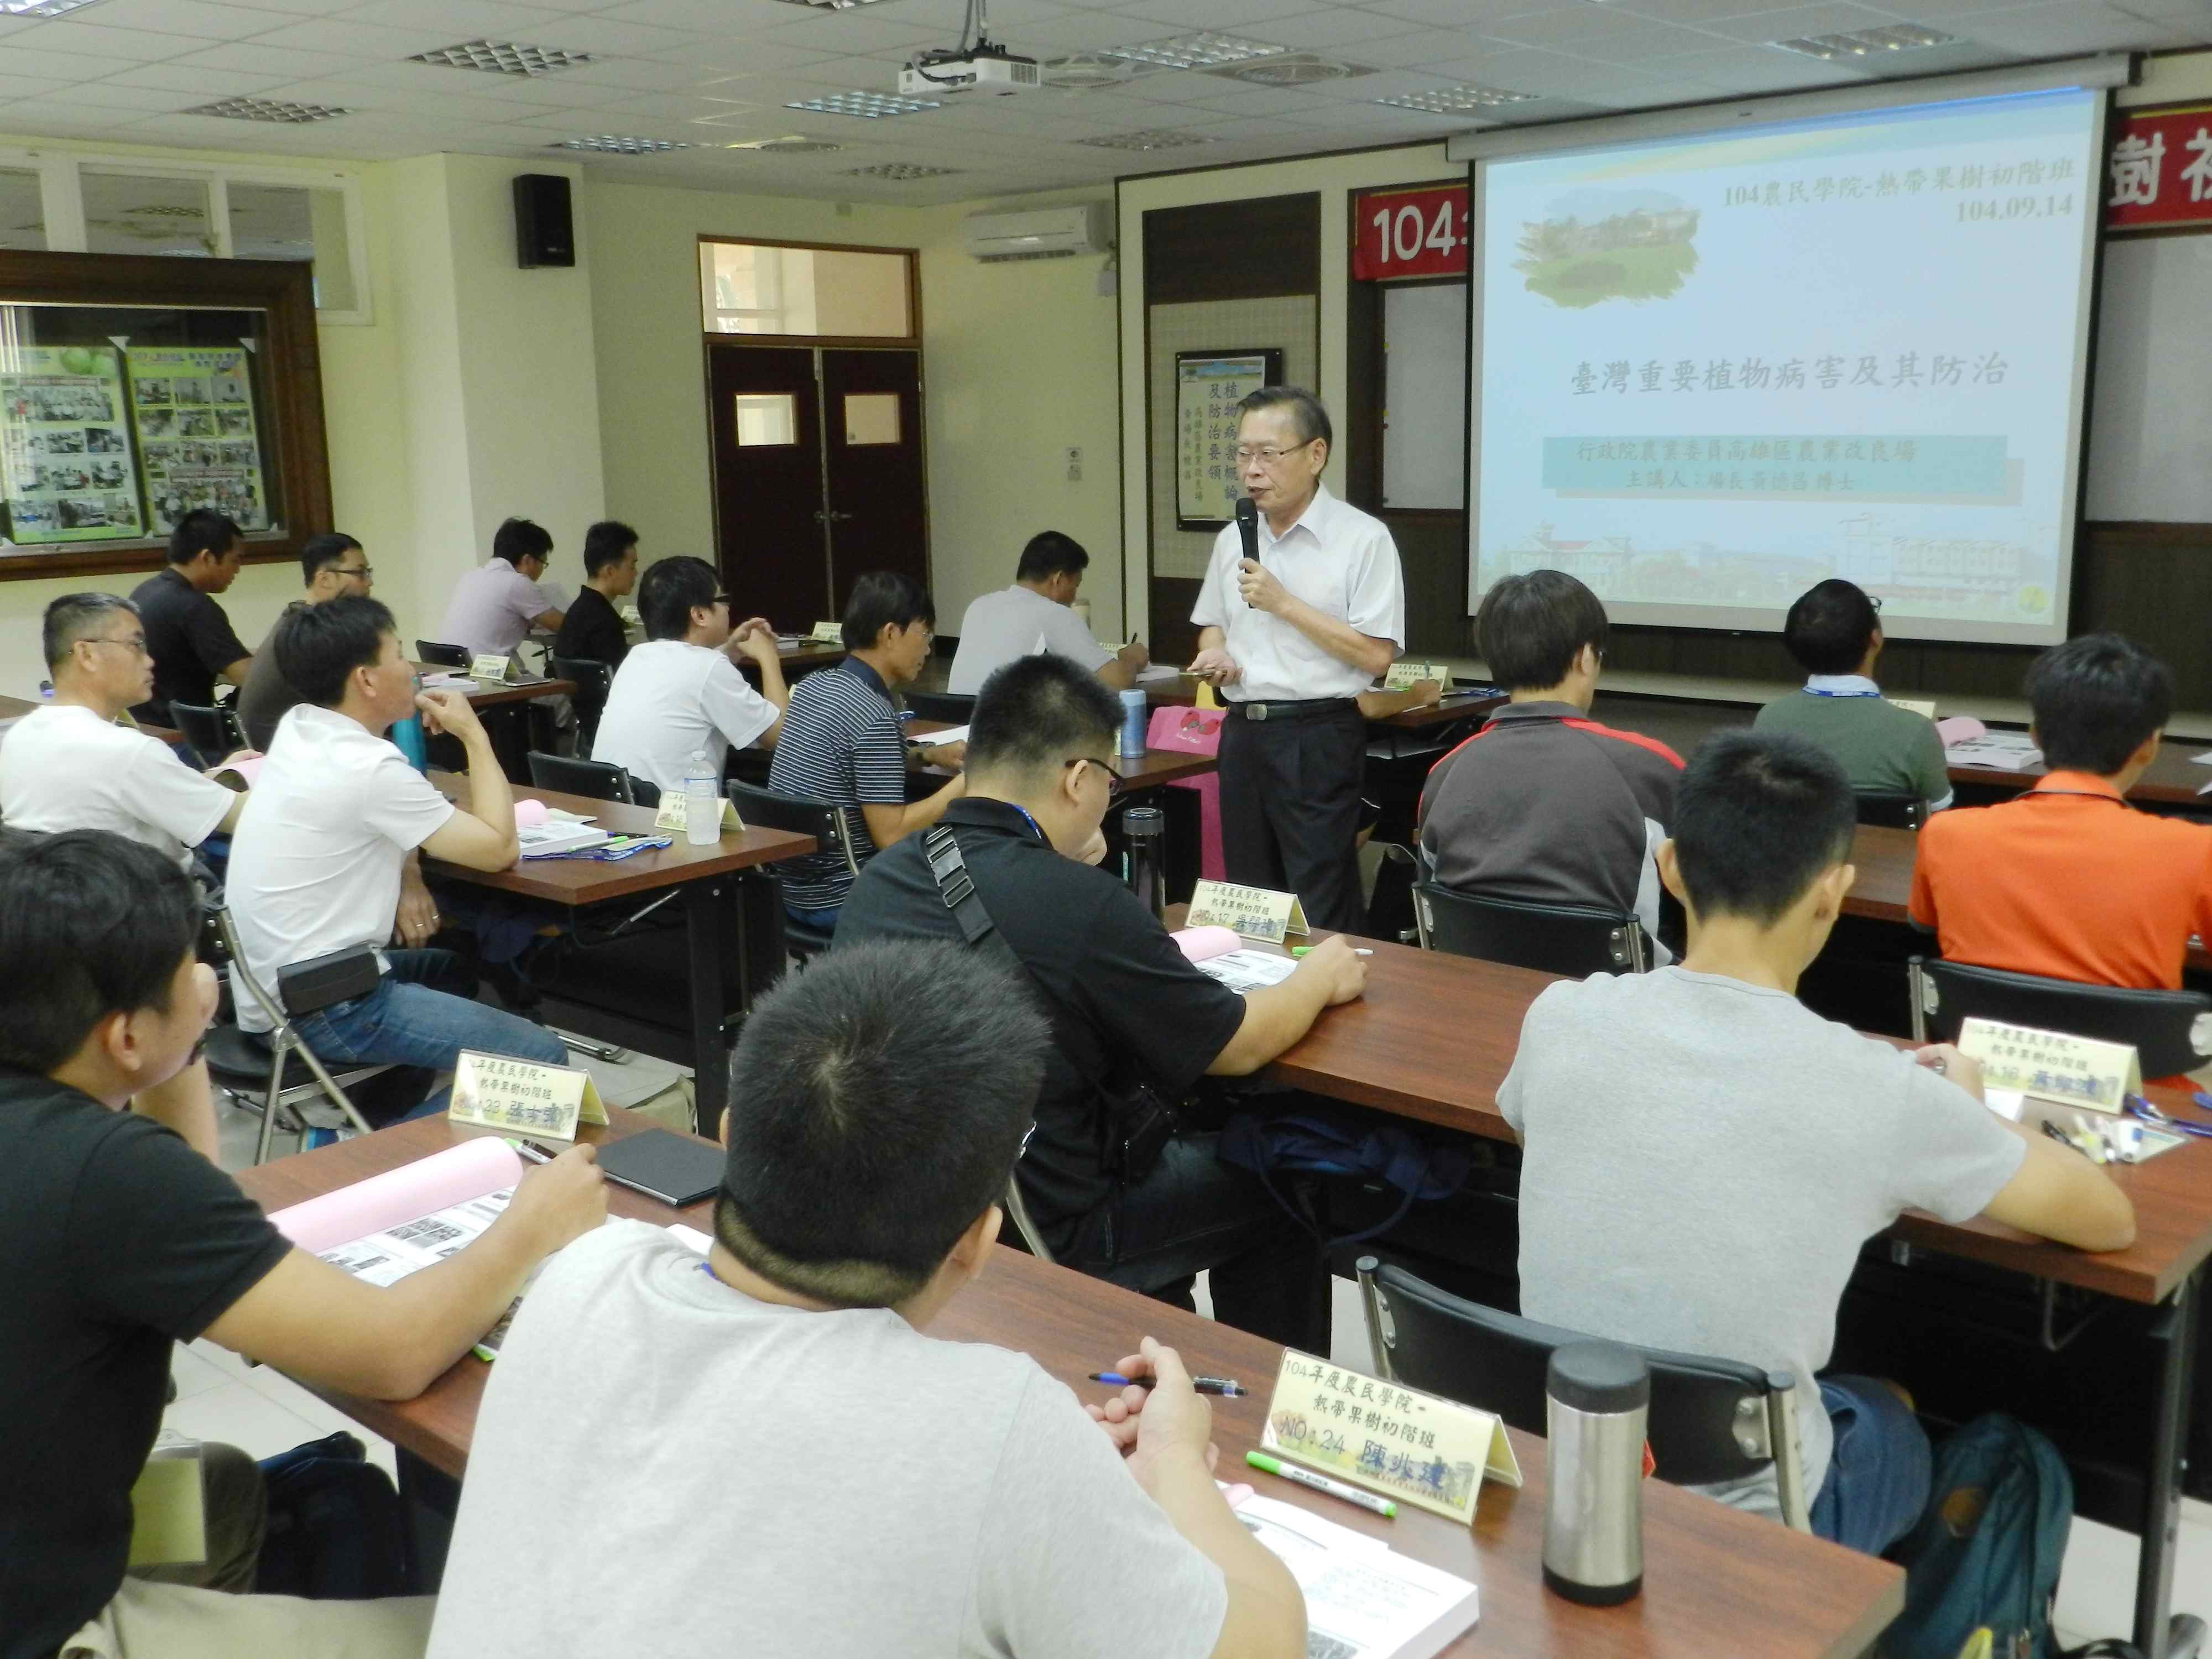 黃場長講授台灣重要植物病害及防治課程